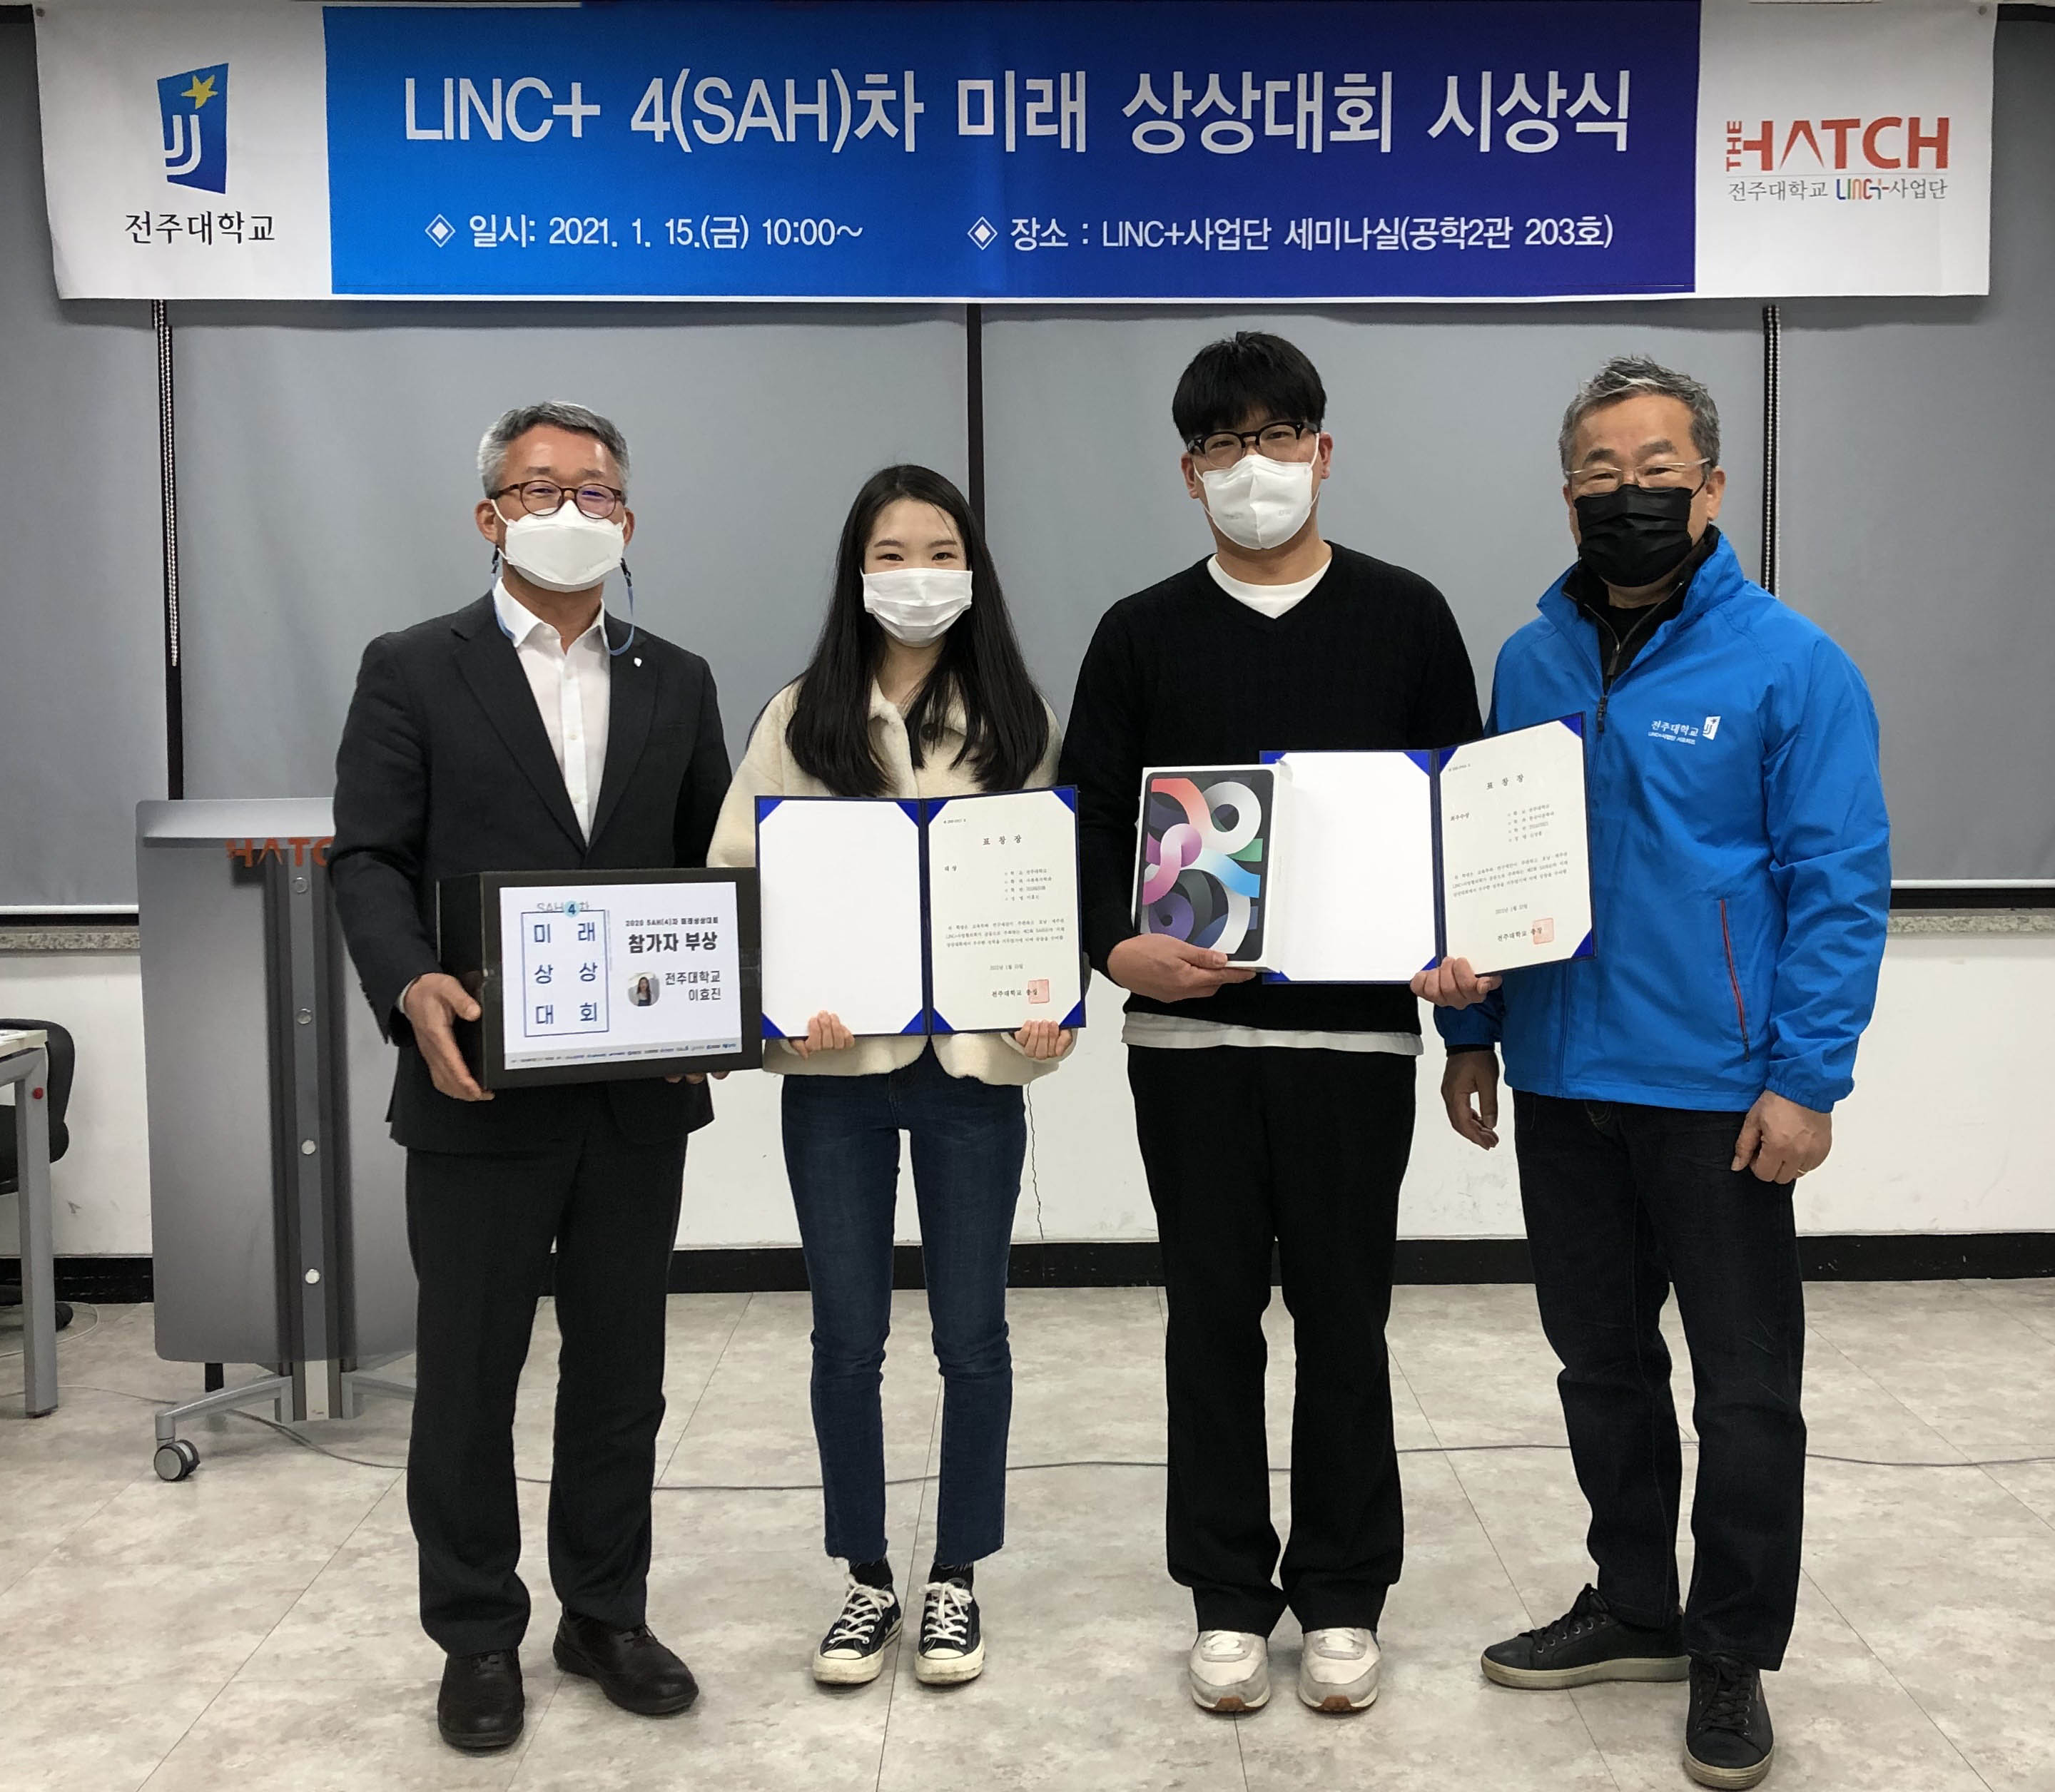  전주대 LINC+사업단, 4차(SAH) 미래 상상대회 시상식 개최.jpg